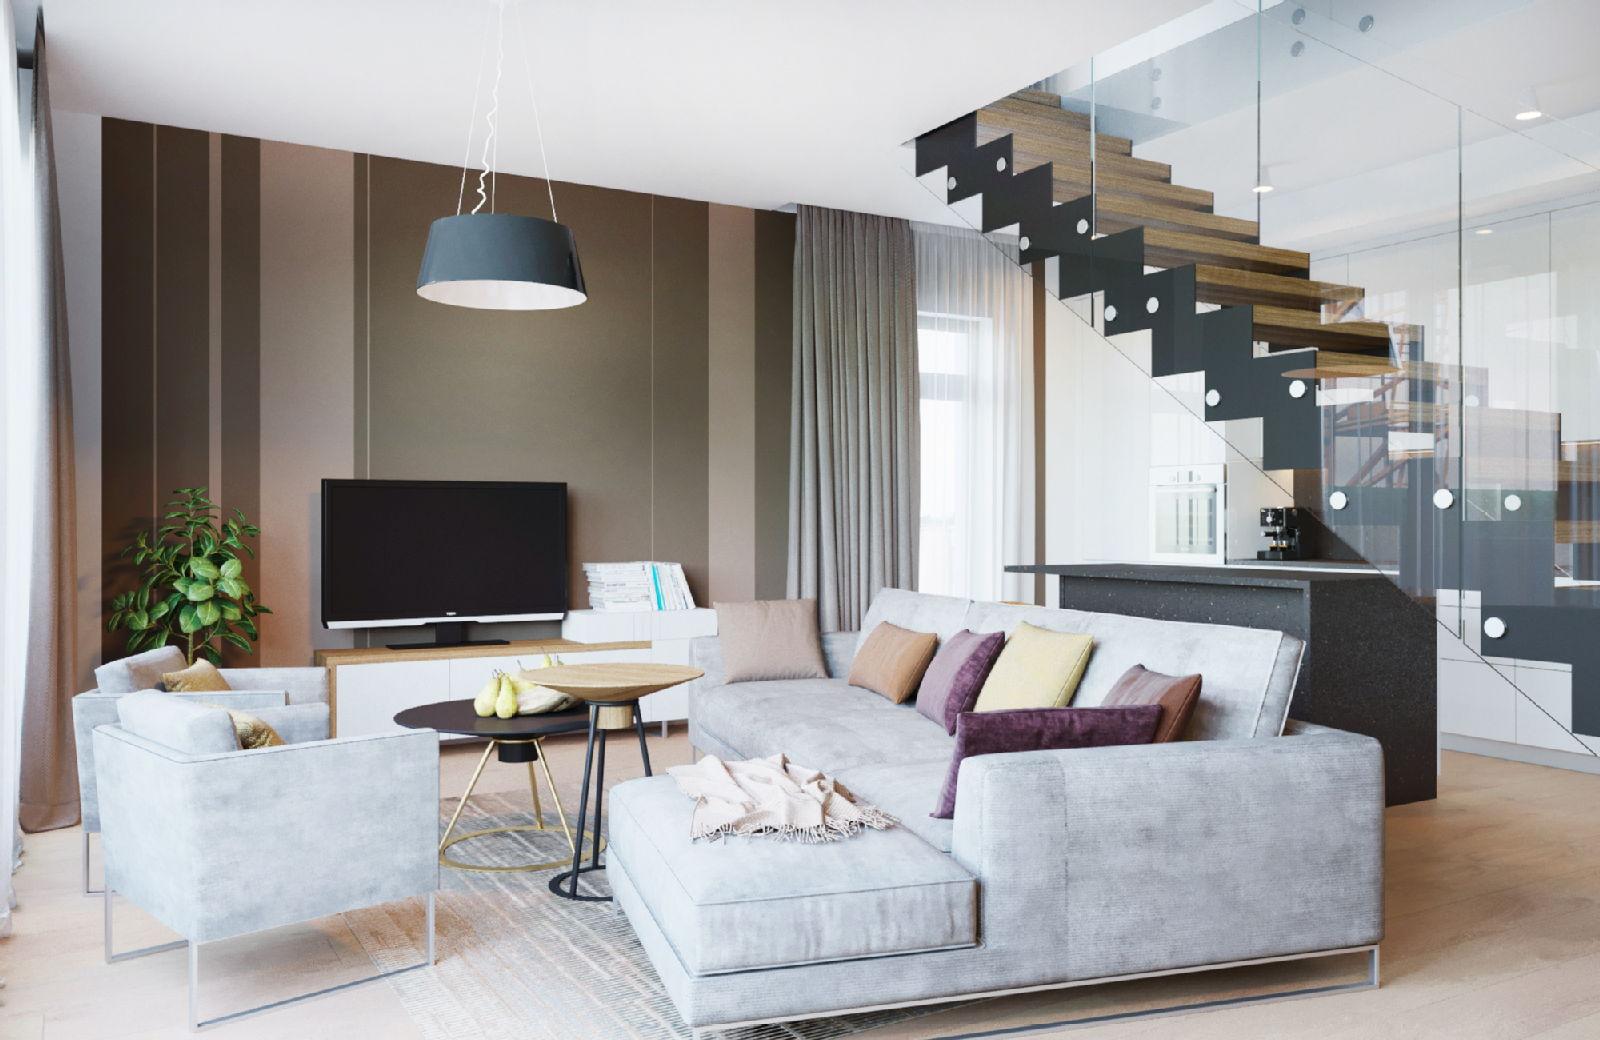 Karstākais jaunums Rīgas īpašumu tirgū – īres dzīvokļi jaunā projektā Cēsu Terraces. Nāc apskatīt! - Nekustamo īpašumu ziņas - City24.lv nekustamo īpašumu sludinājumu portāls